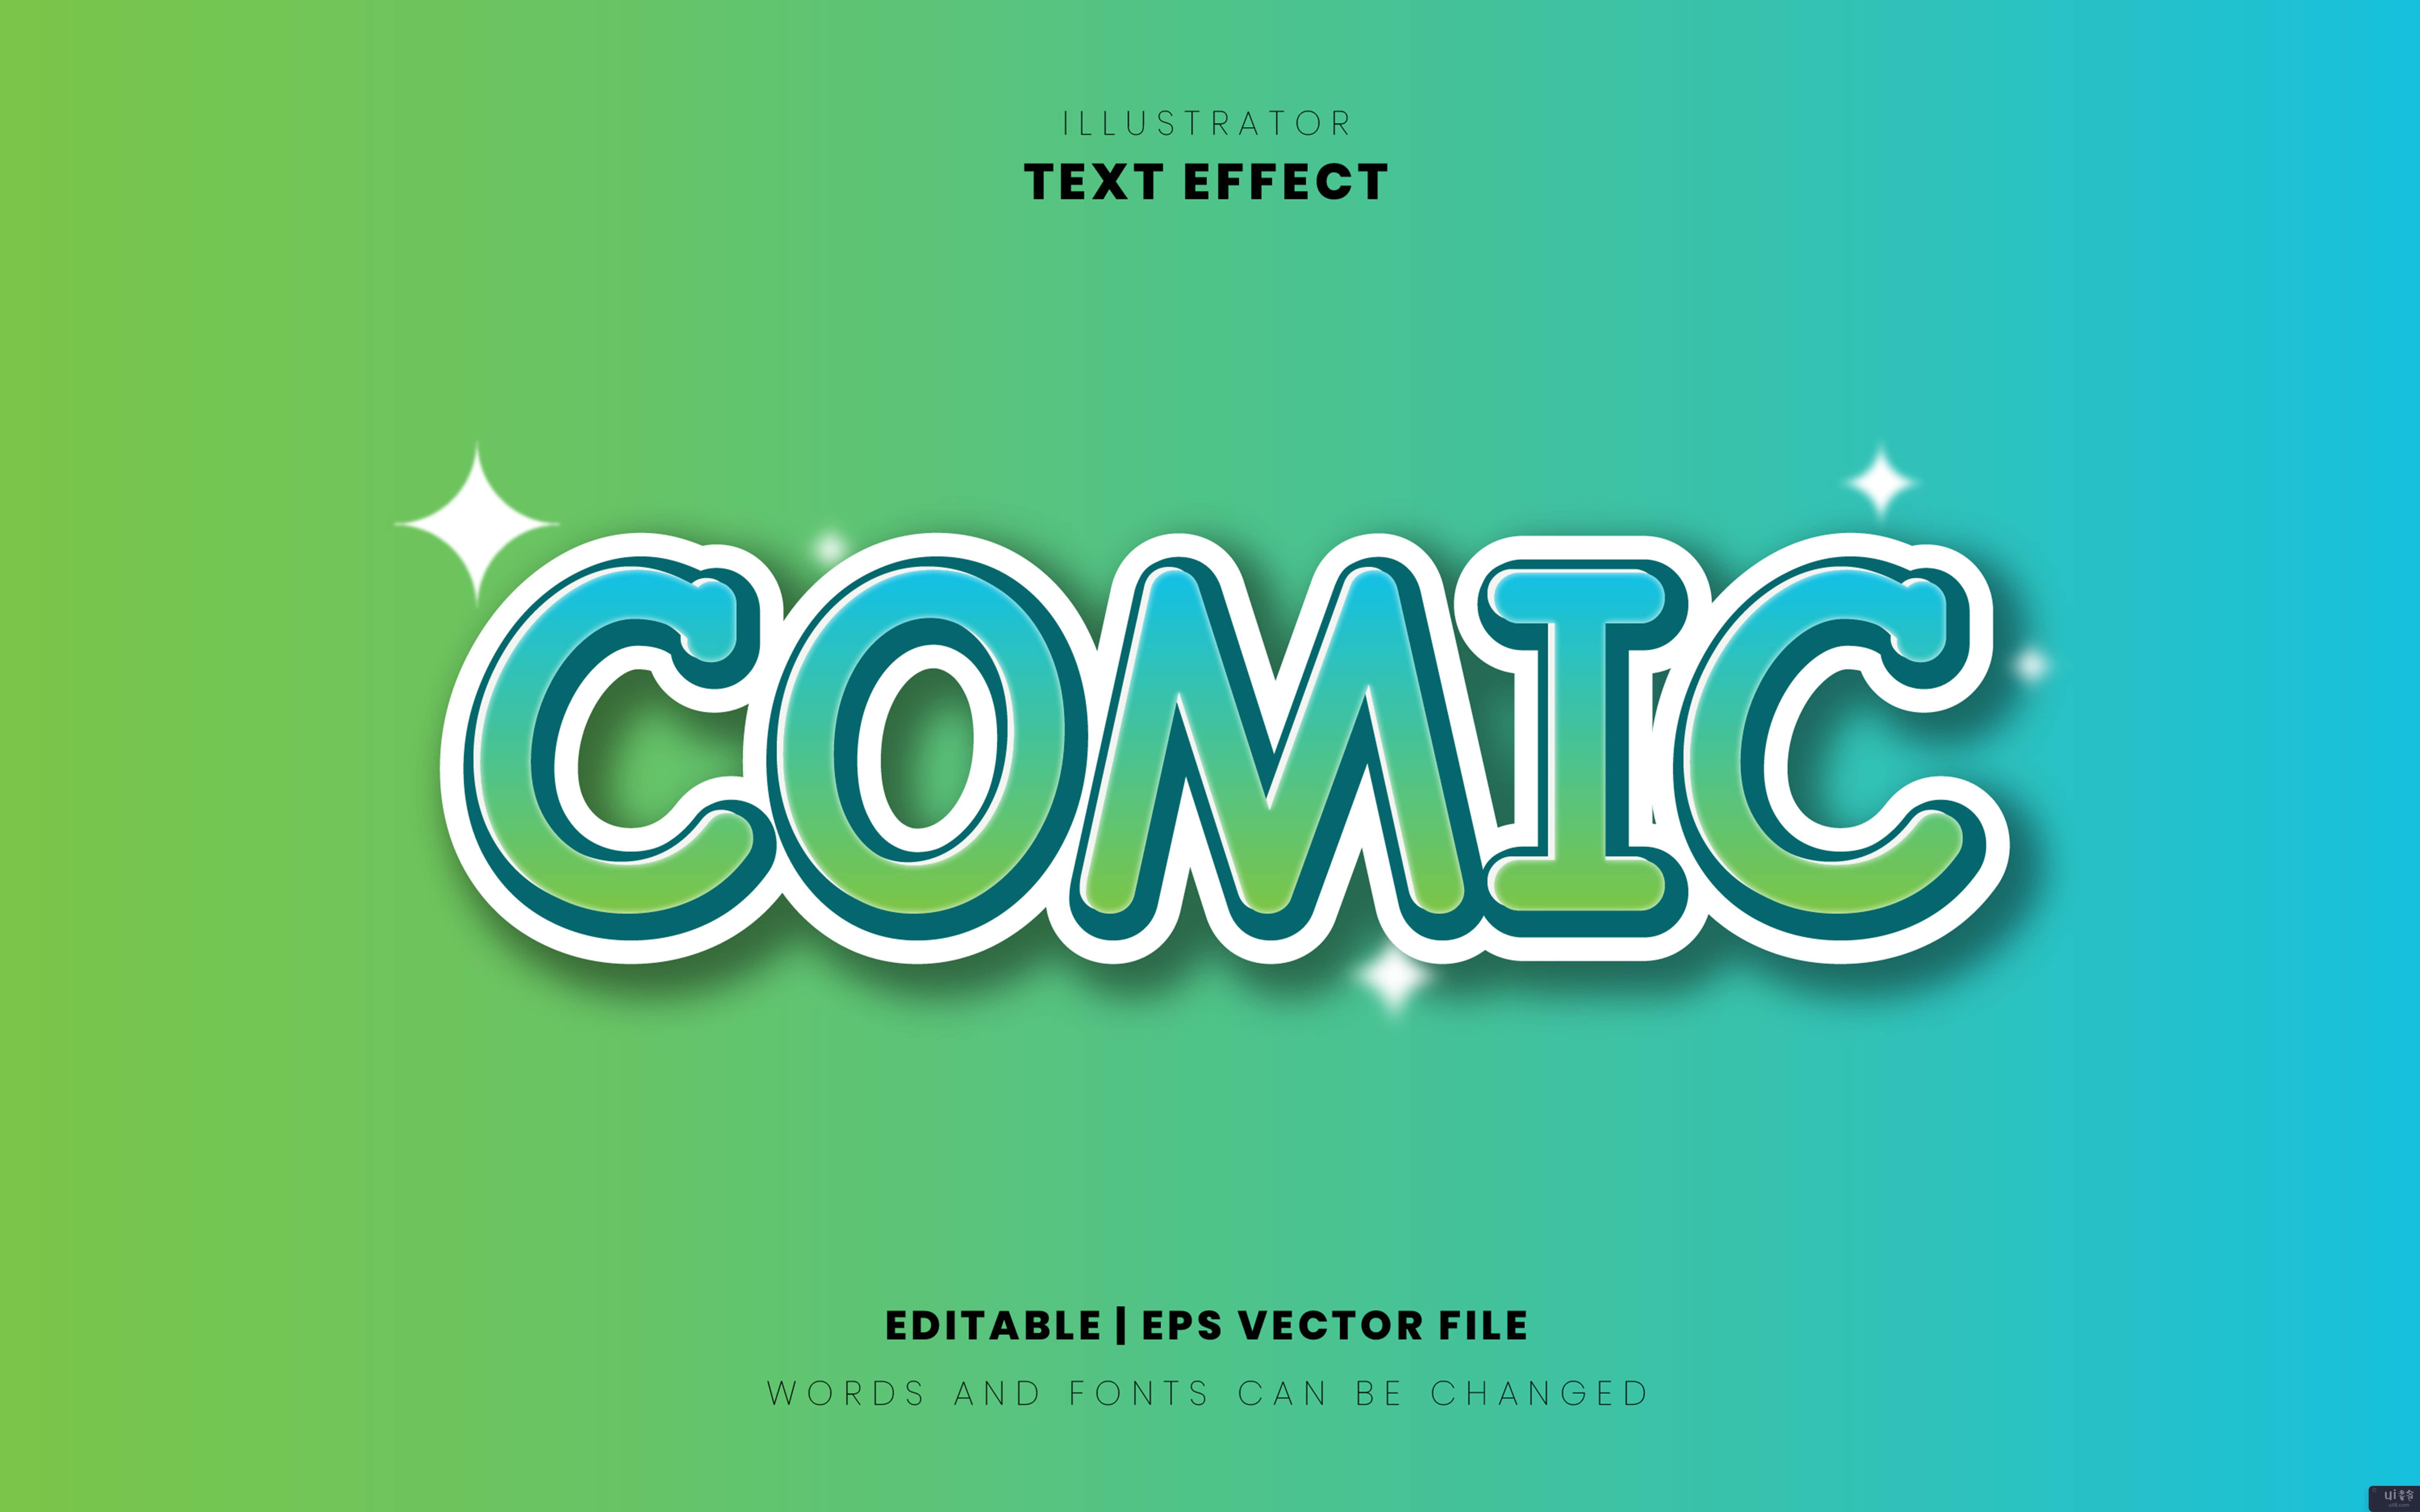 漫画风格文字效果(Comic style text effect)插图2